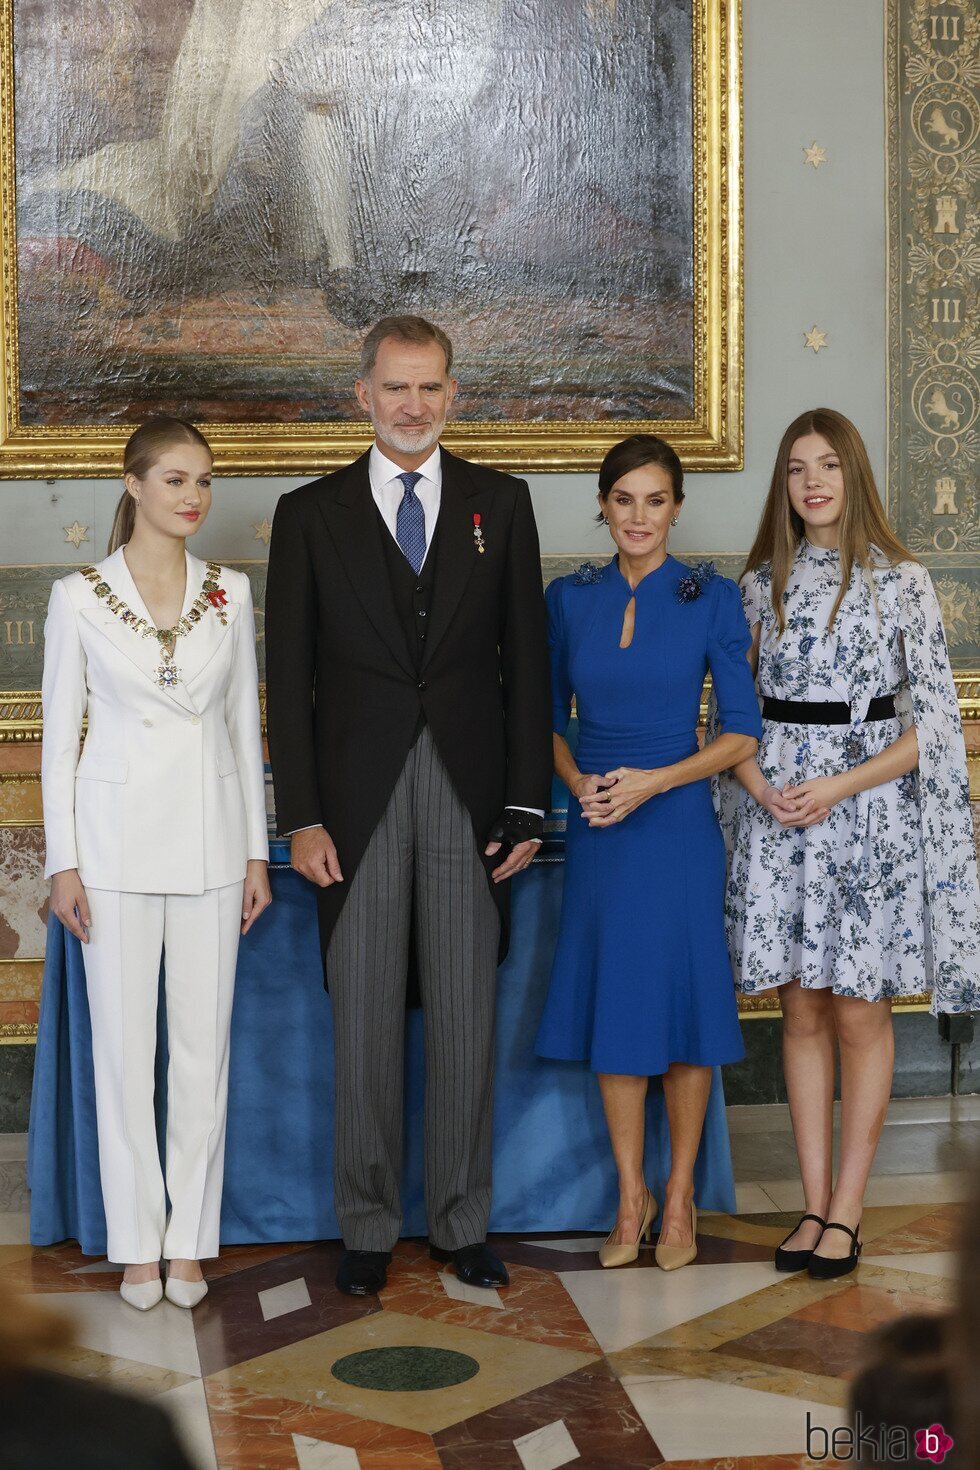 Los Reyes junto a la Princesa Leonor y la Infanta Sofía tras la entrega del Collar de Carlos III y la Jura de la Constitución